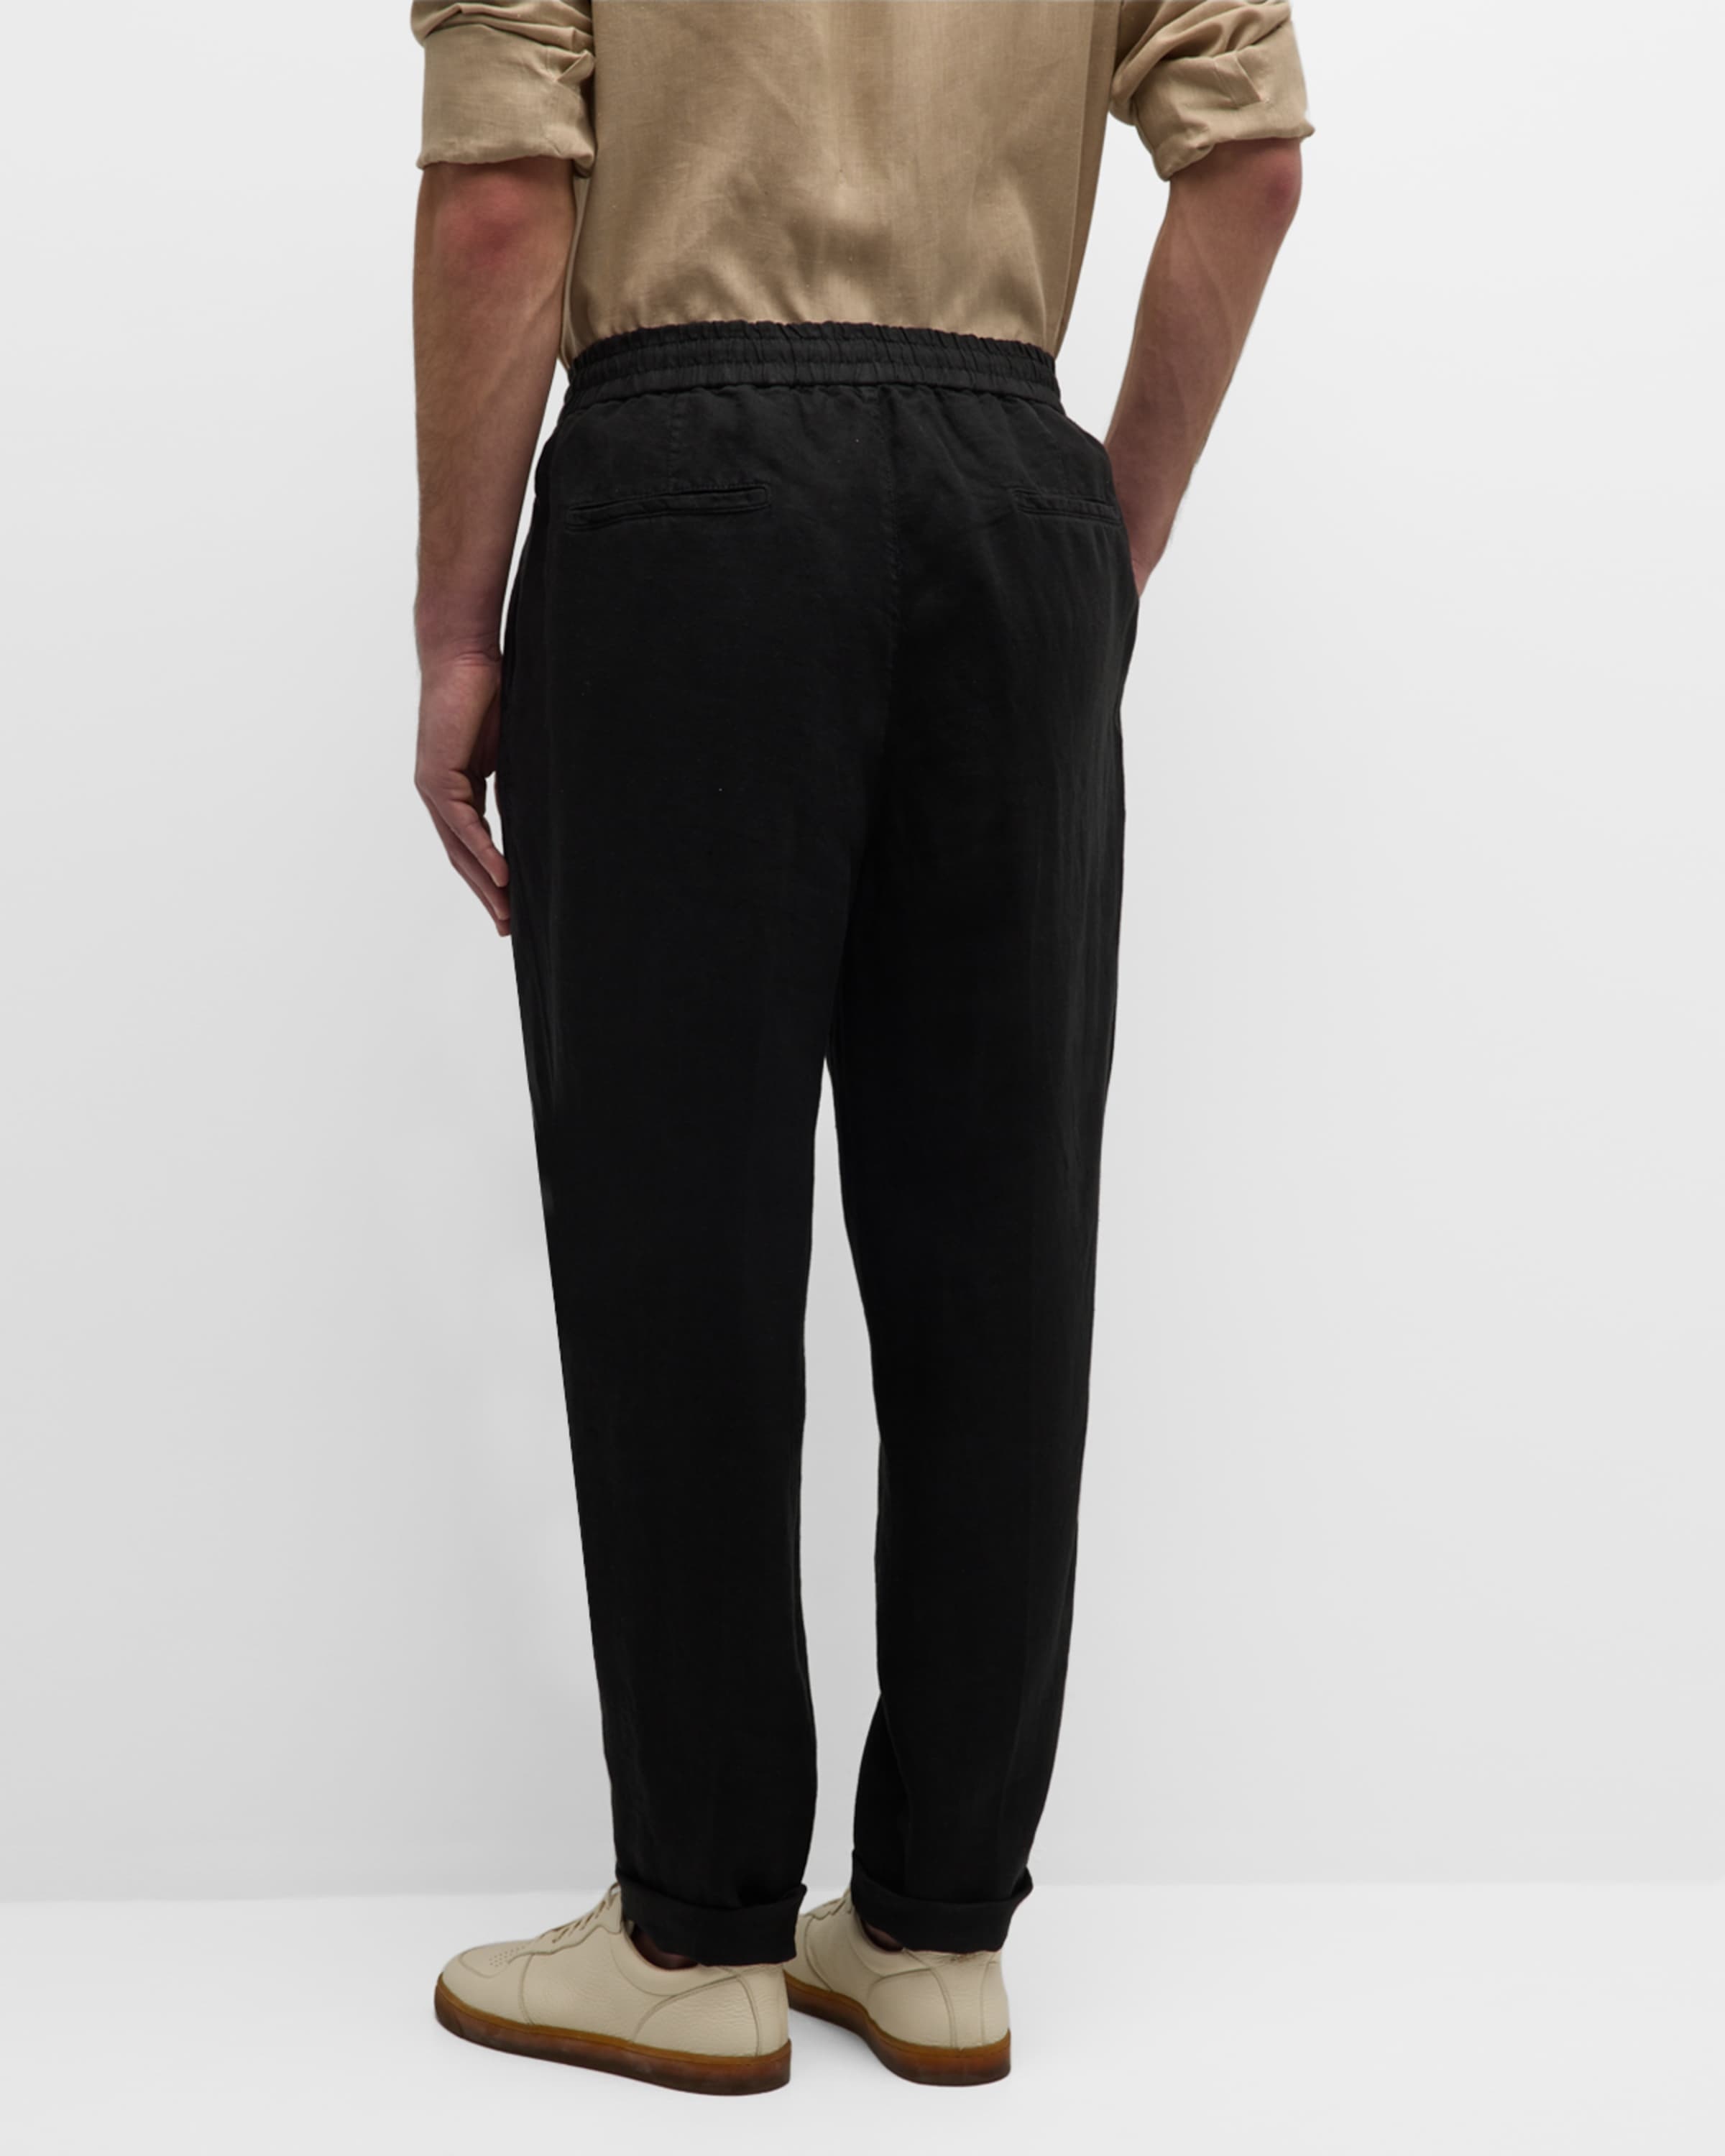 Men's Linen Leisure-Fit Drawstring Pants - 3